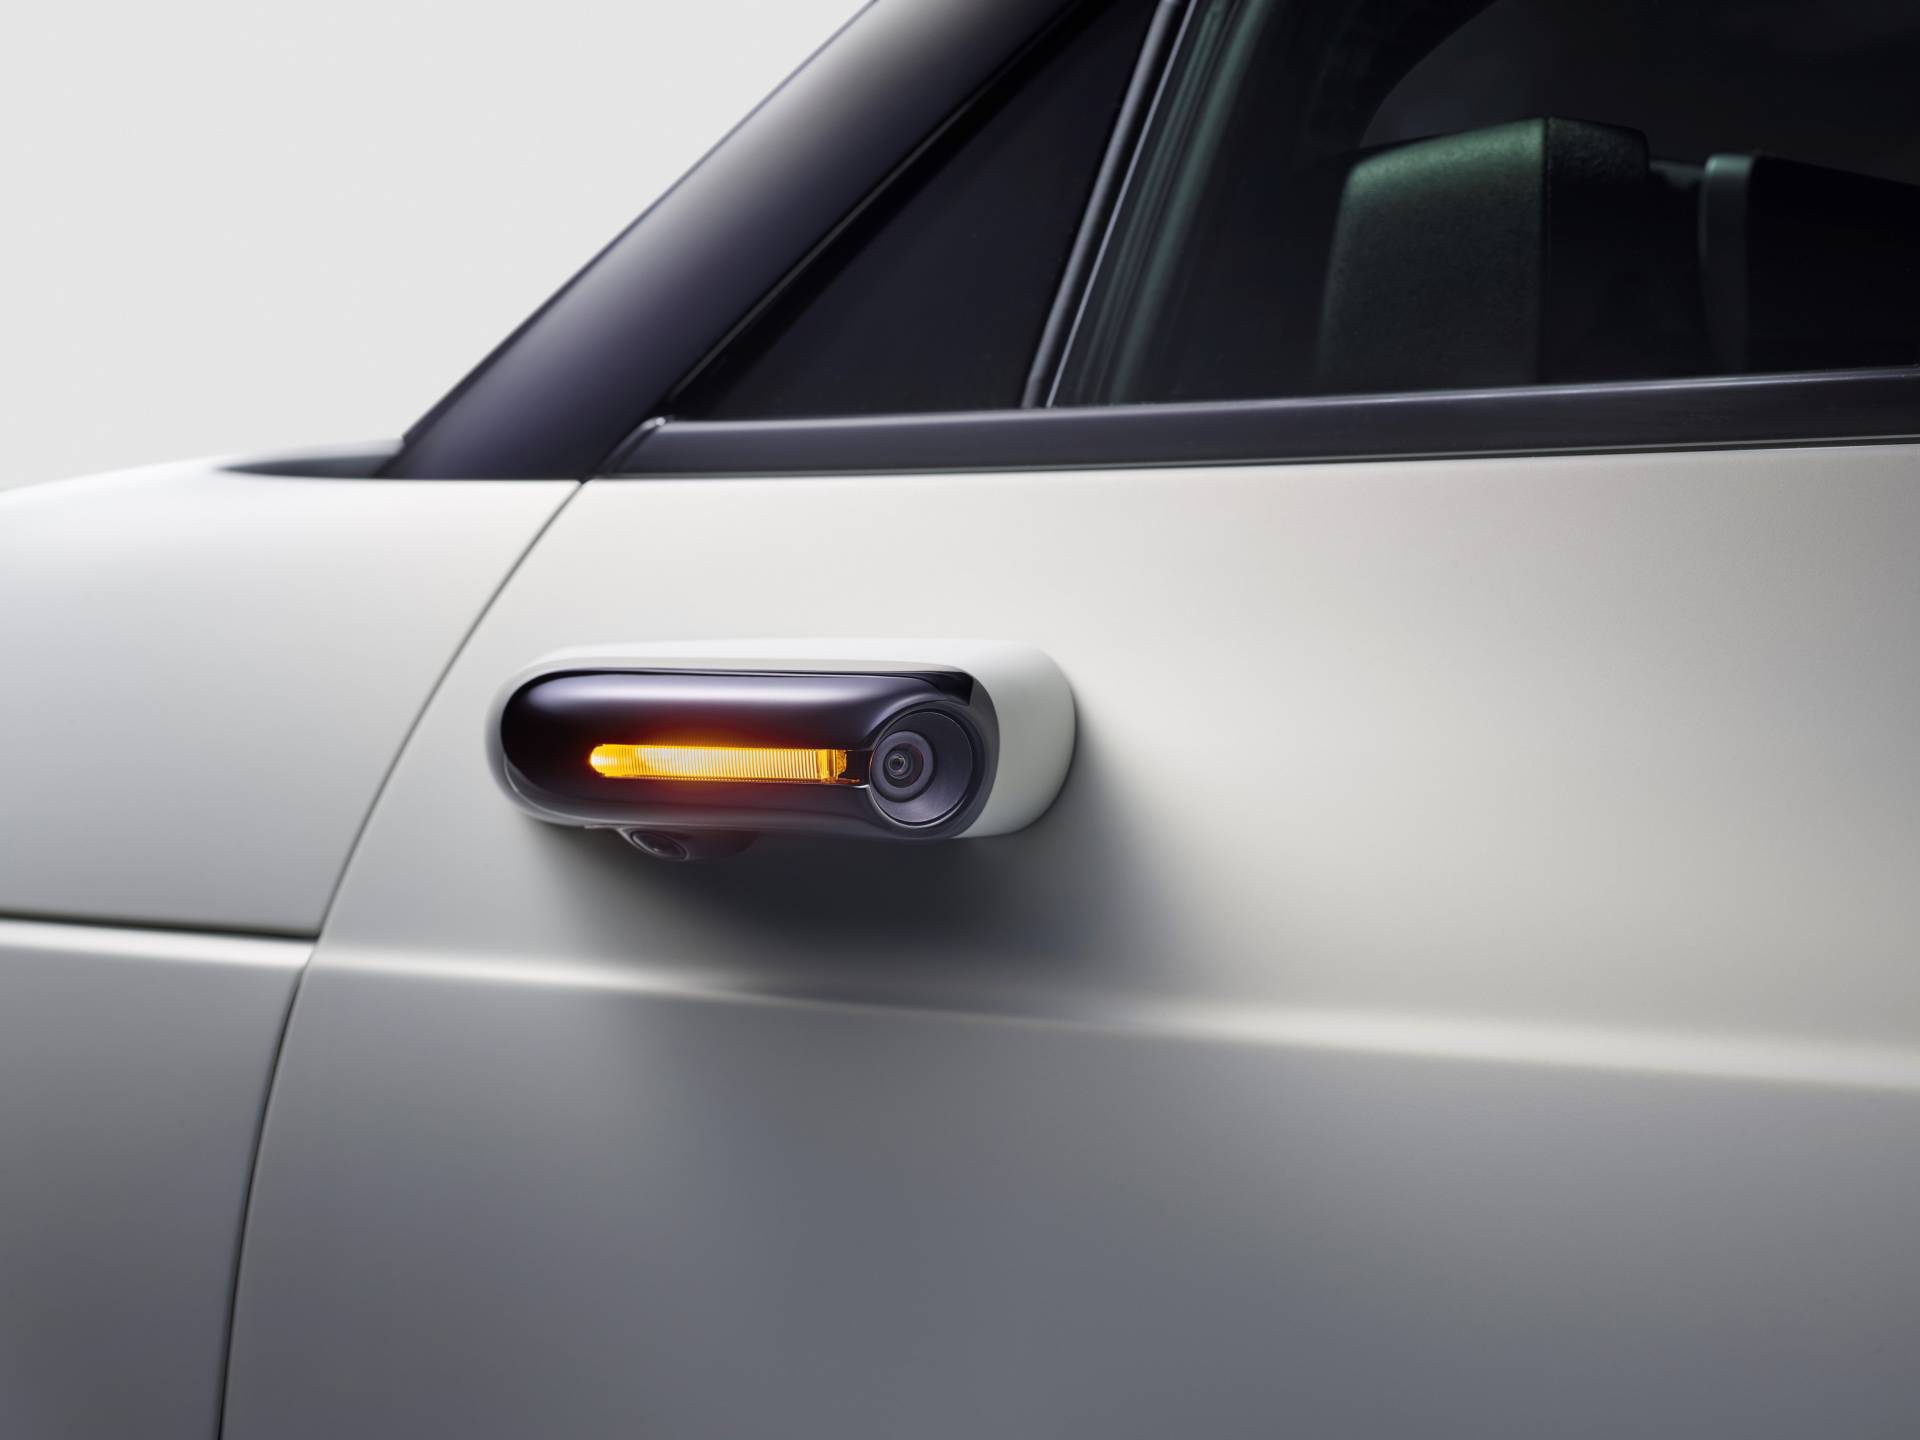 خودرو هوندا e کامپکت الکتریکی دوربین را به جای آیینه بغل استفاده خواهد کرد